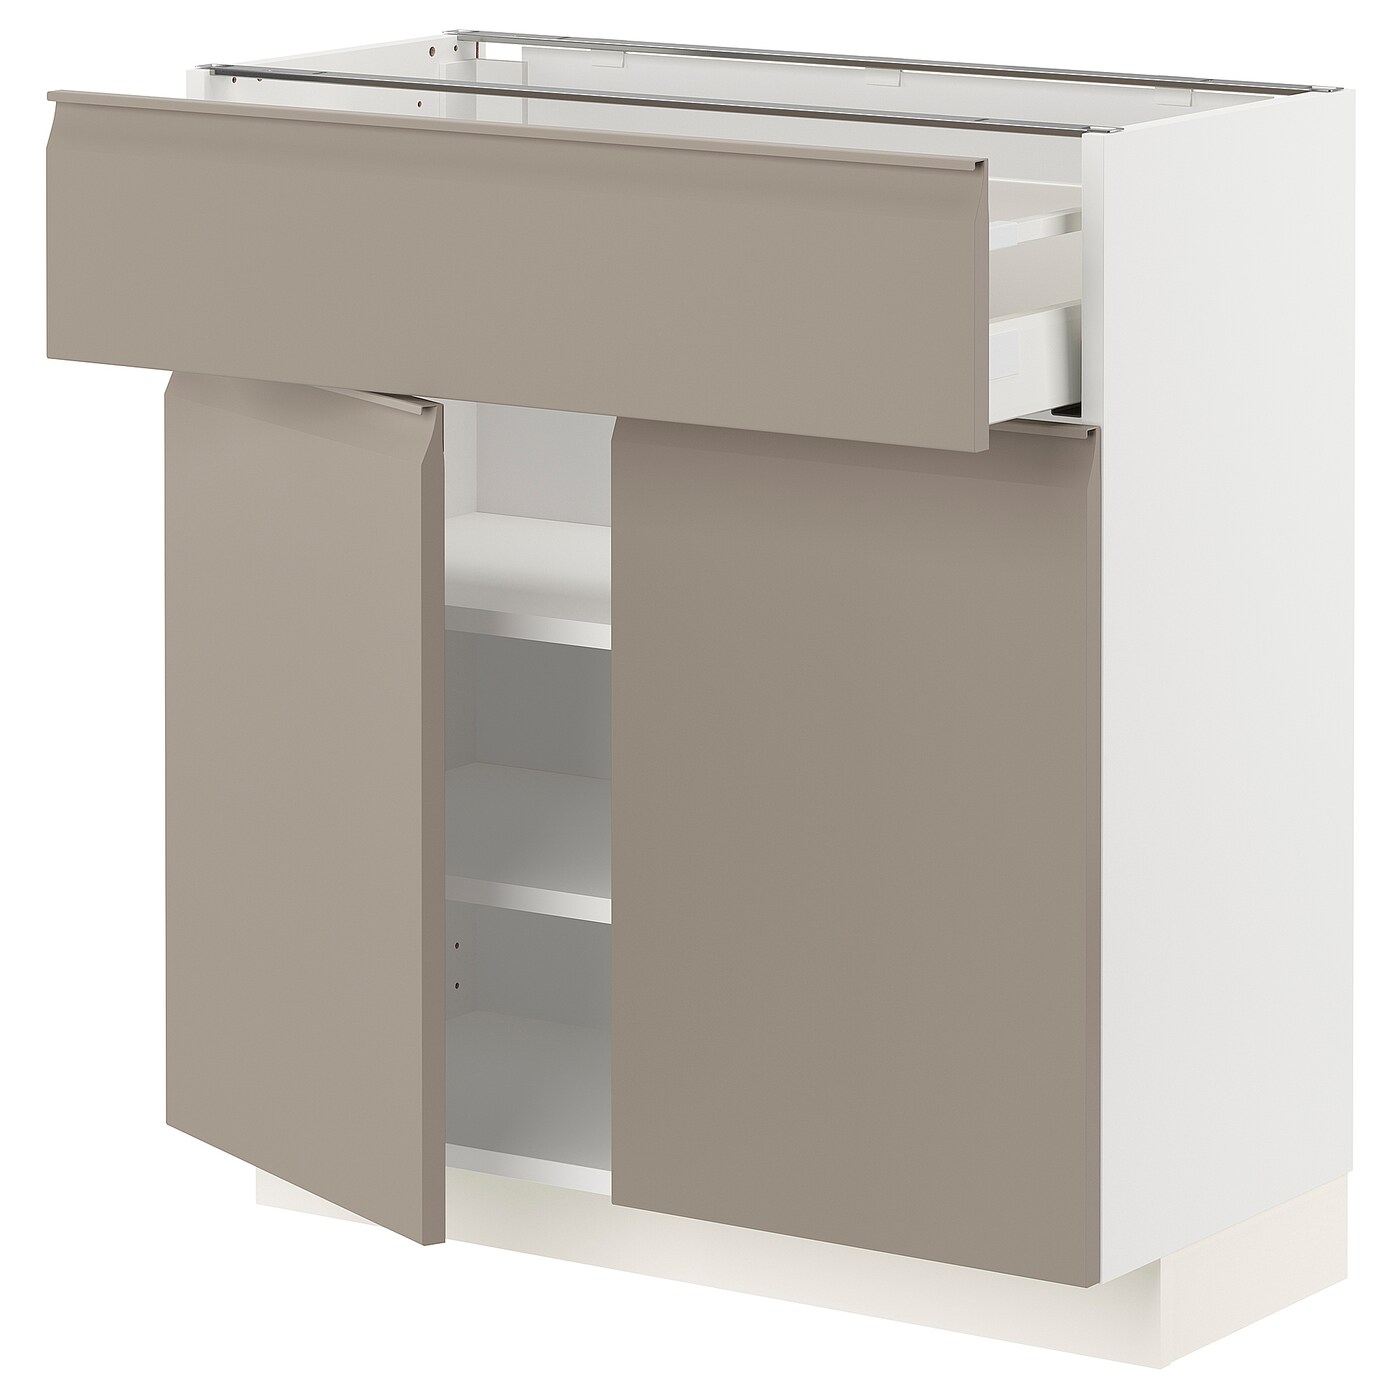 Напольный кухонный шкаф  - IKEA METOD MAXIMERA, 80x37x80см, белый/светло-коричневый, МЕТОД МАКСИМЕРА ИКЕА